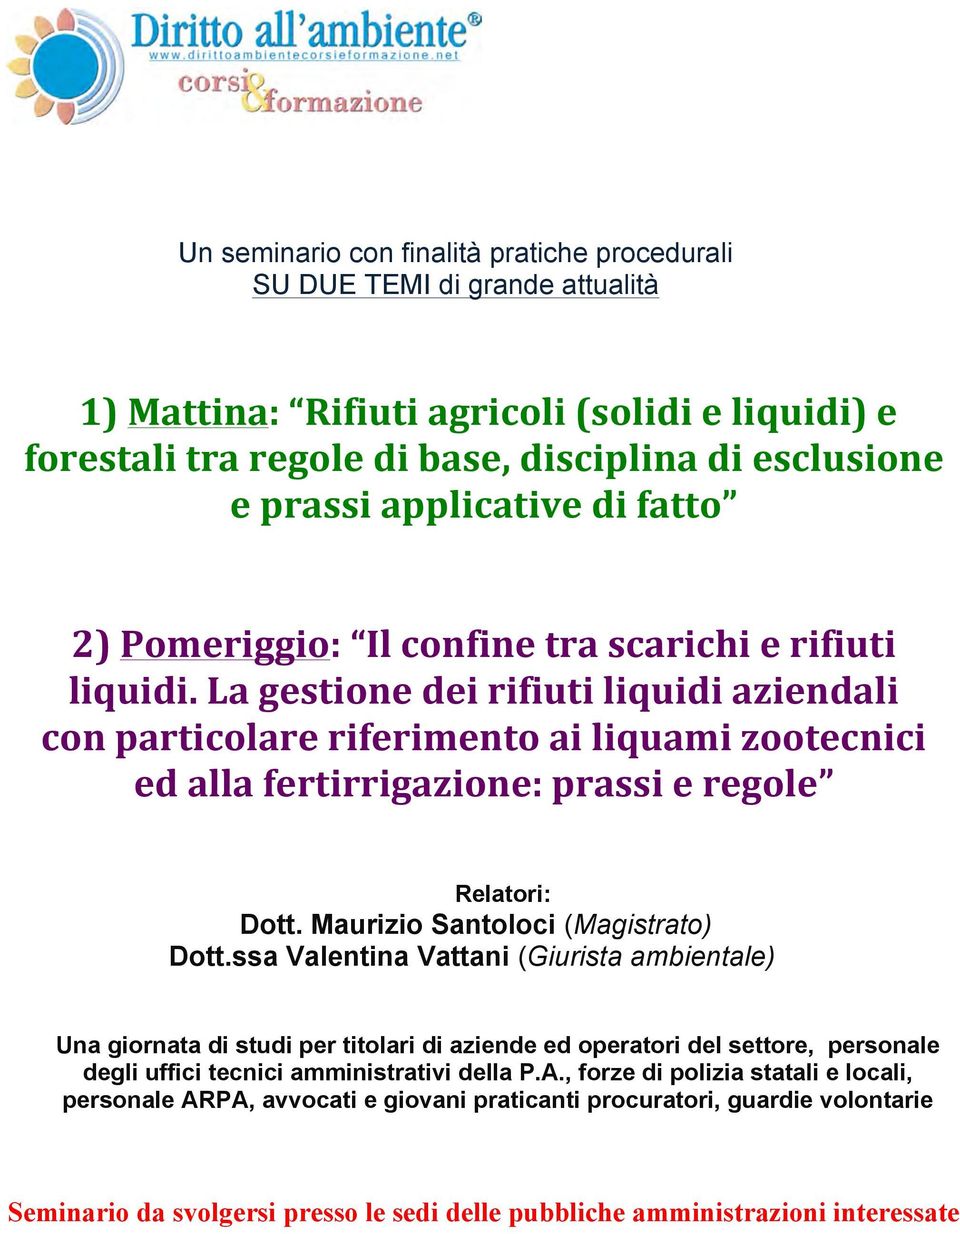 La gestione dei rifiuti liquidi aziendali con particolare riferimento ai liquami zootecnici ed alla fertirrigazione: prassi e regole Relatori: Dott. Maurizio Santoloci (Magistrato) Dott.